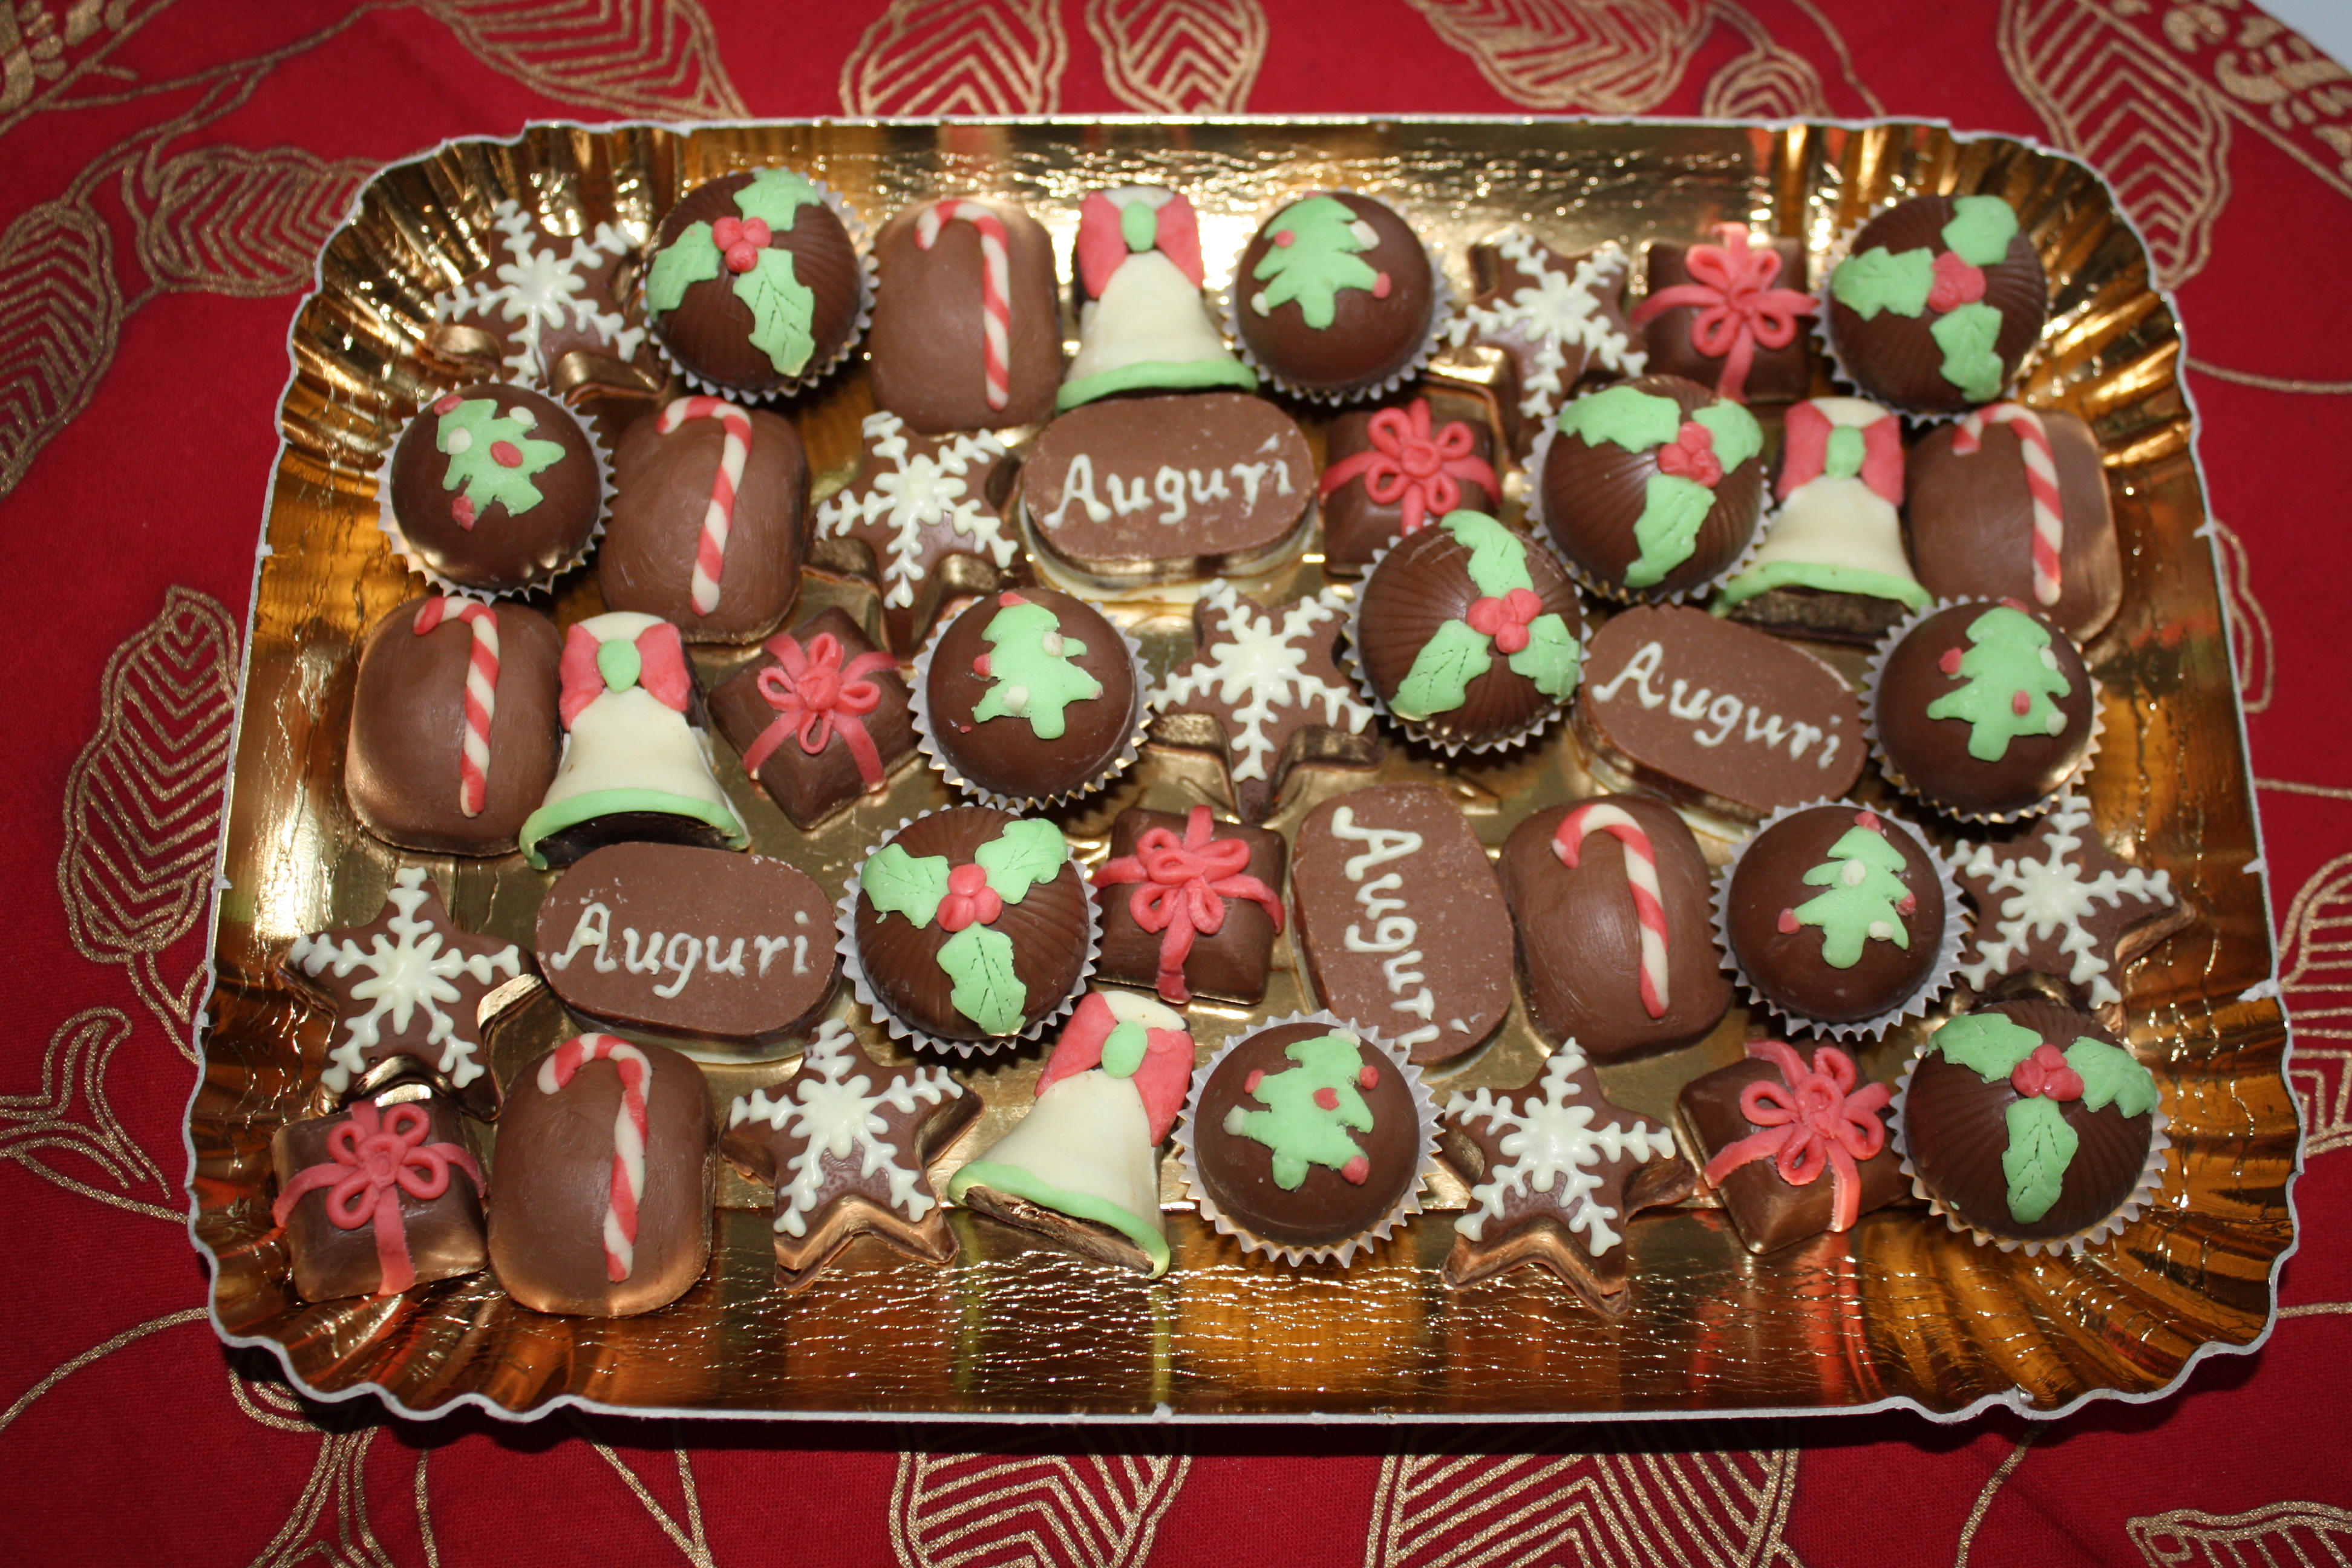 Christmas-themed Chocolate Cake